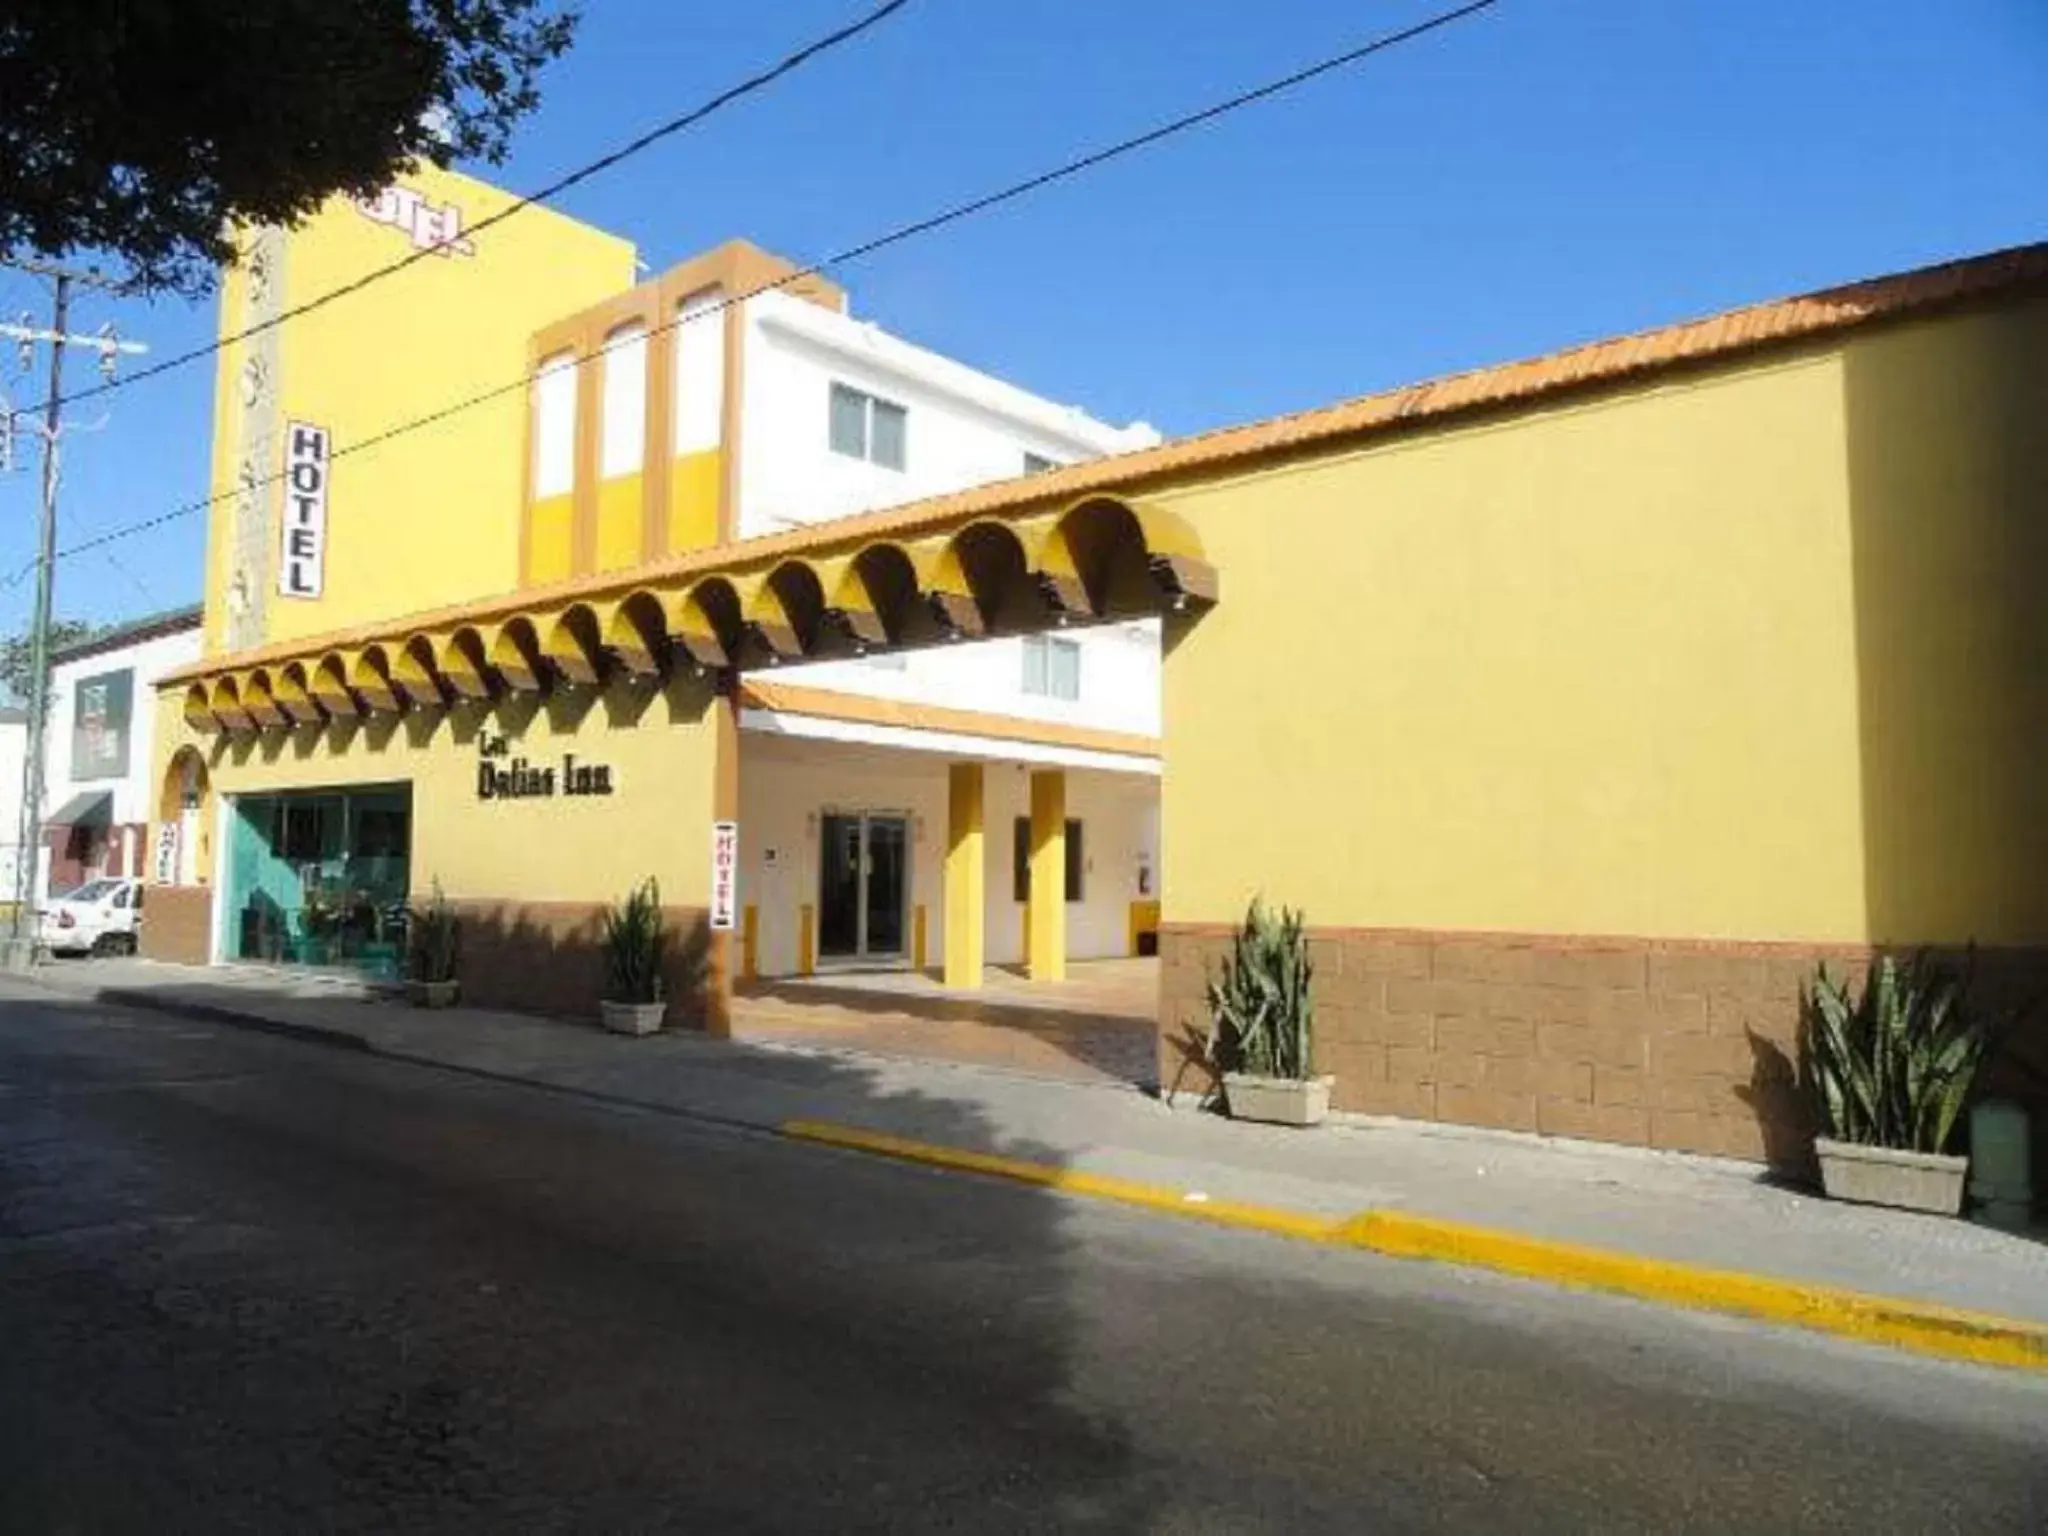 Facade/entrance, Property Building in Hotel Las Dalias Inn